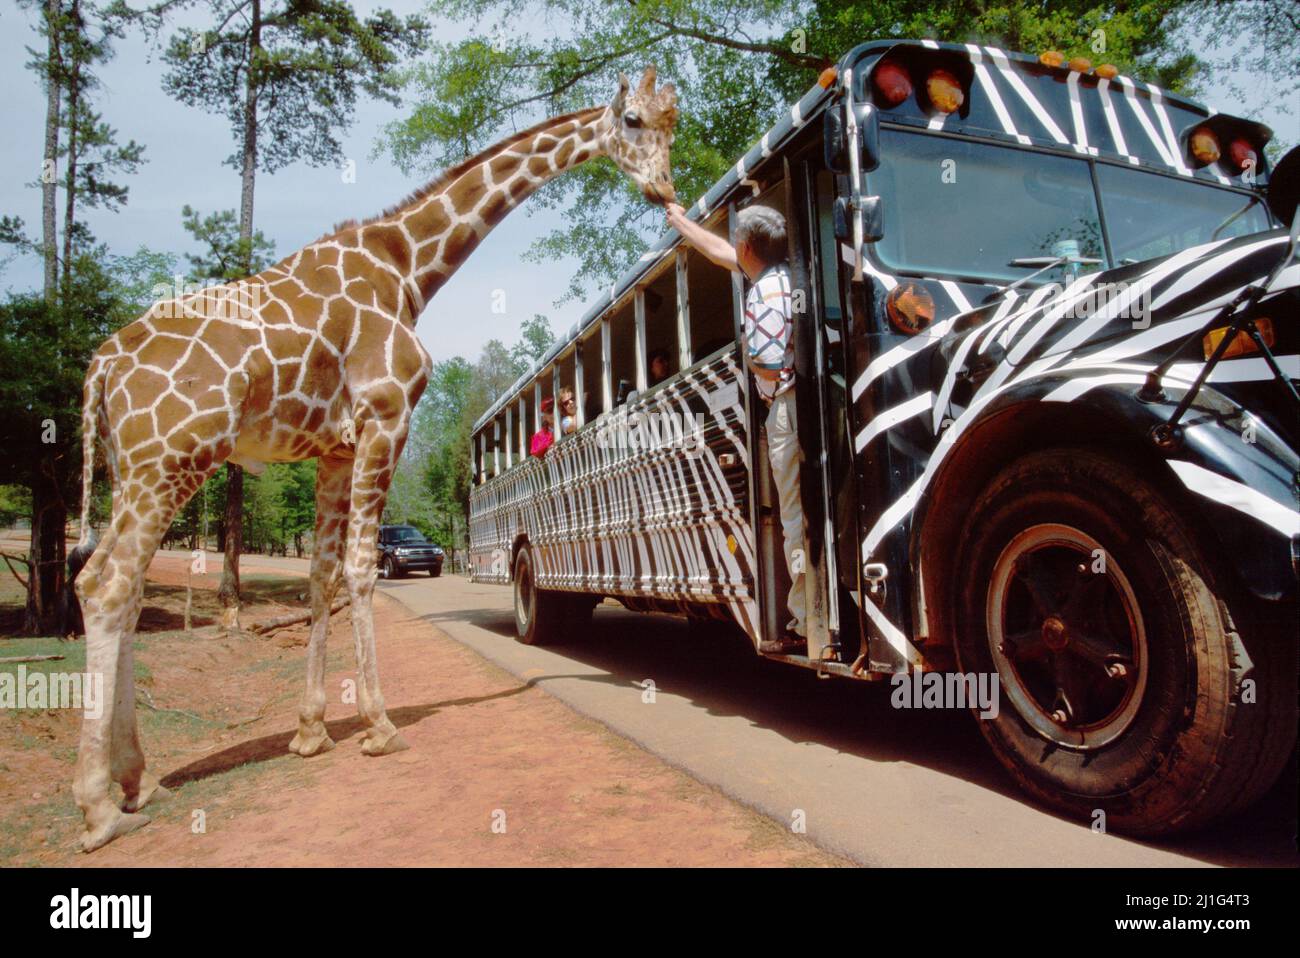 Georgia Pine Mountain Wild Animal Safari,visitor camouflaged tour bus feeds giraffe tourist attraction, Stock Photo